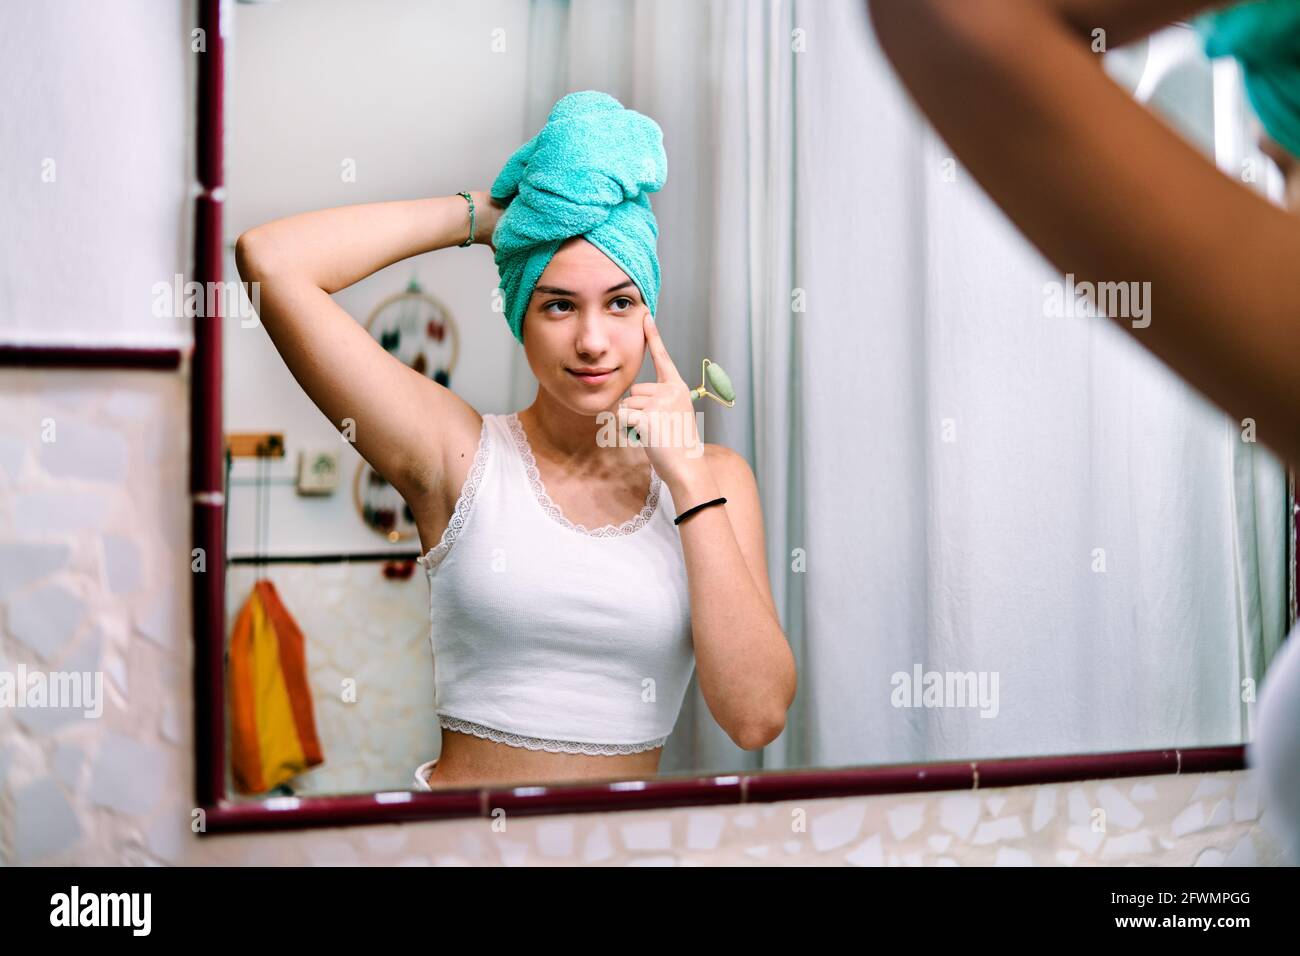 Ein junges Mädchen mit einem Handtuch auf dem Kopf macht eine Gesichtsbehandlung Massage im Badezimmer zu Hause Stockfoto